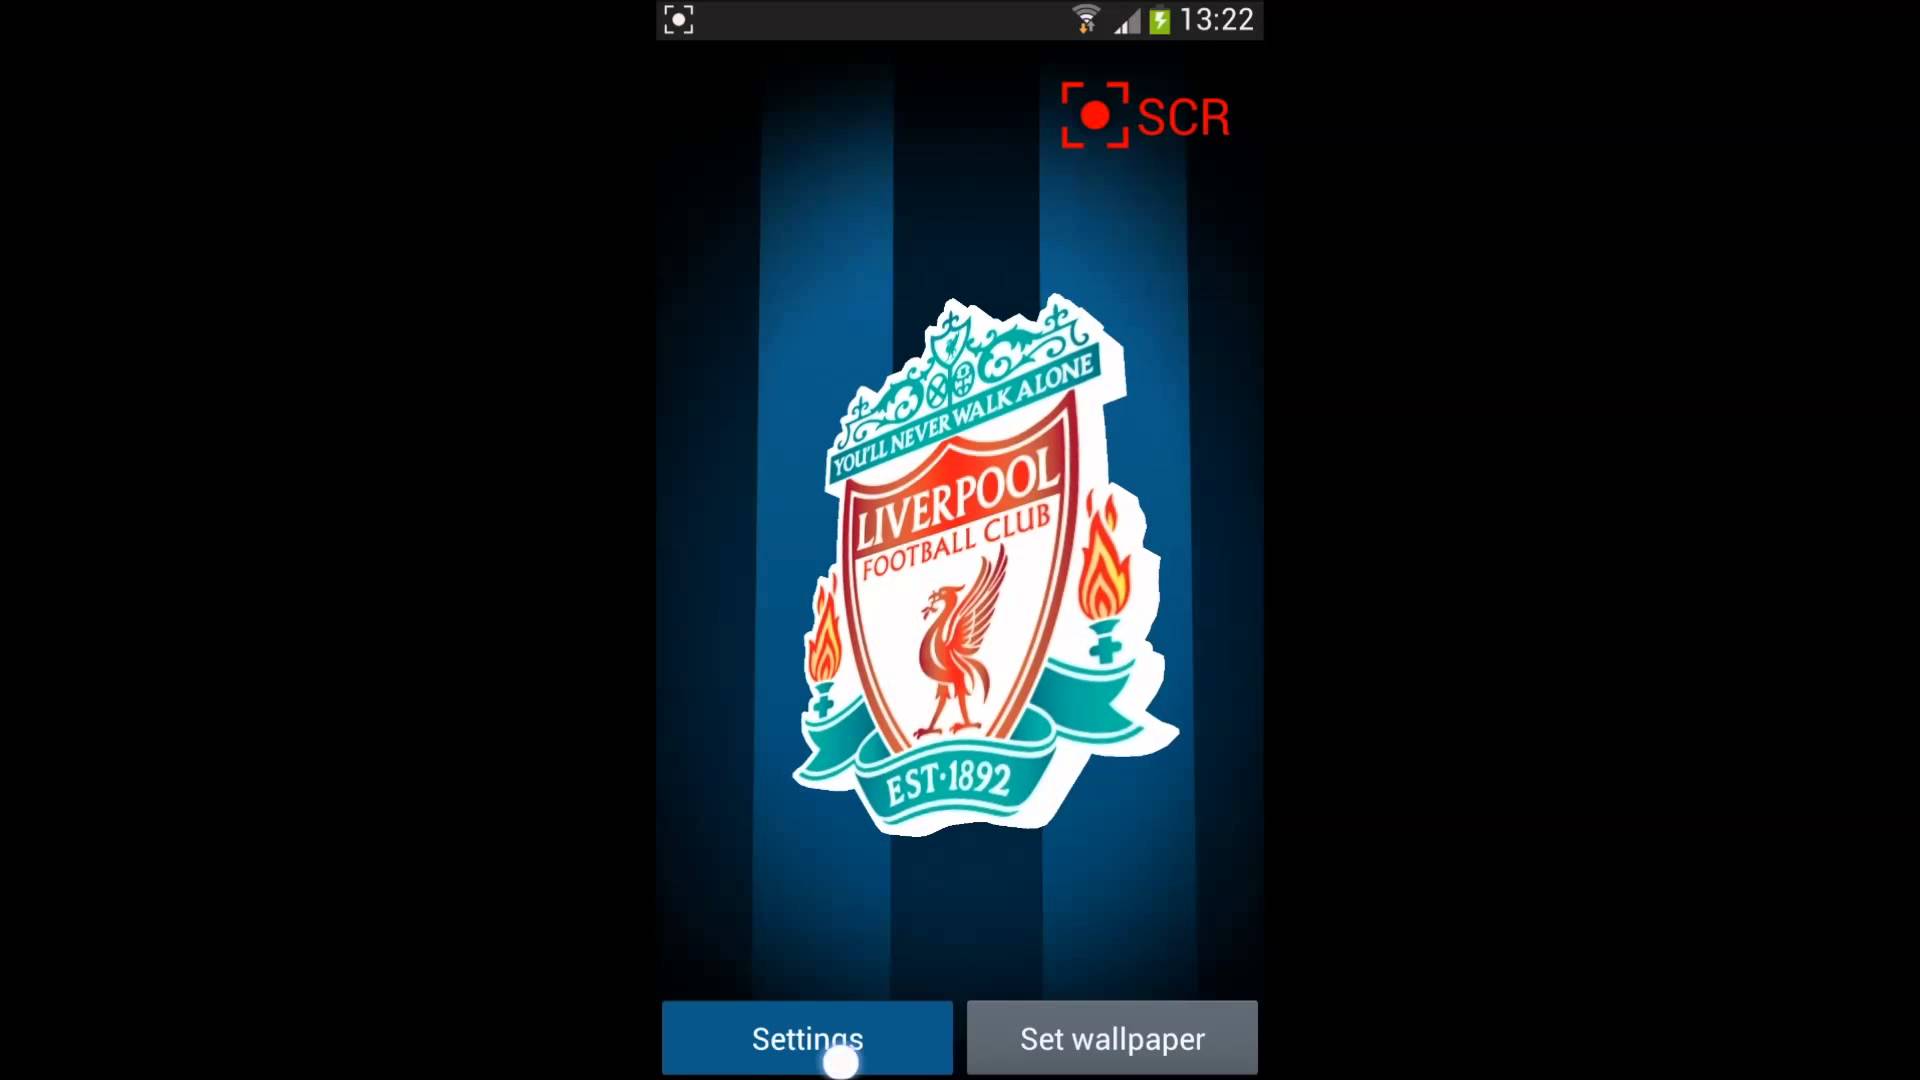 liverpool live wallpaper,games,screenshot,font,logo,technology